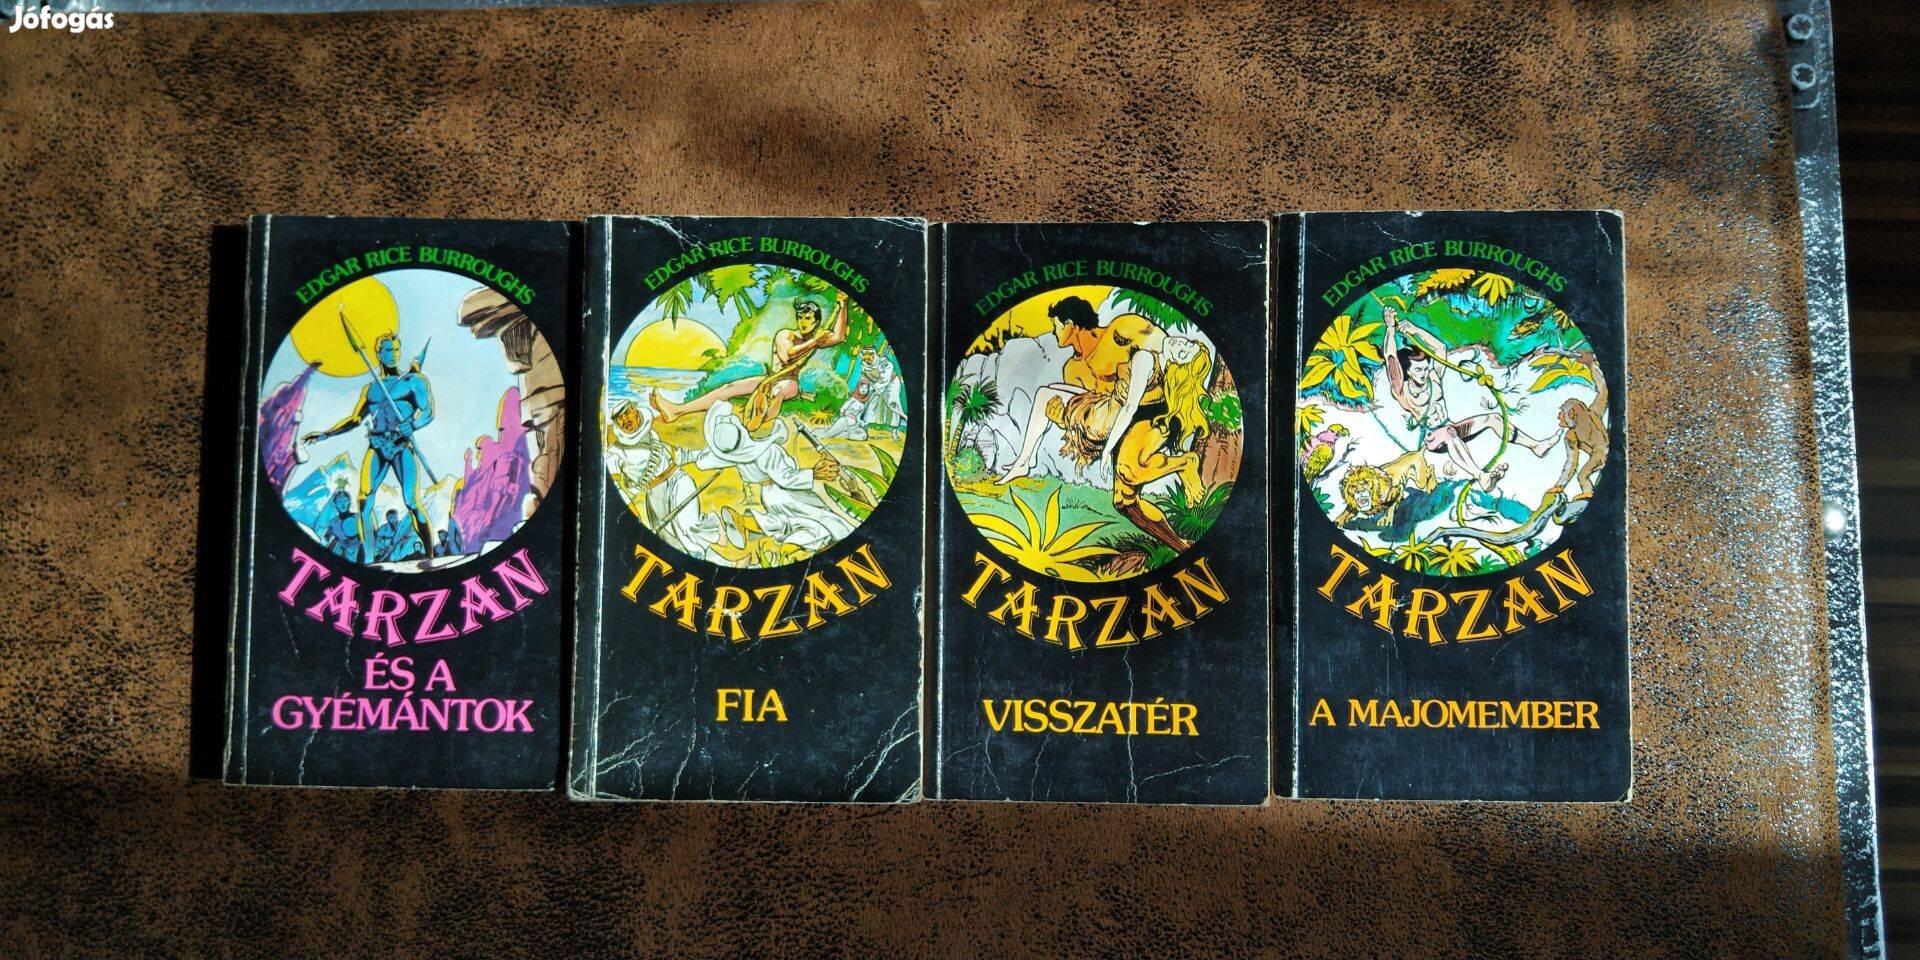 Tarzan könyvek